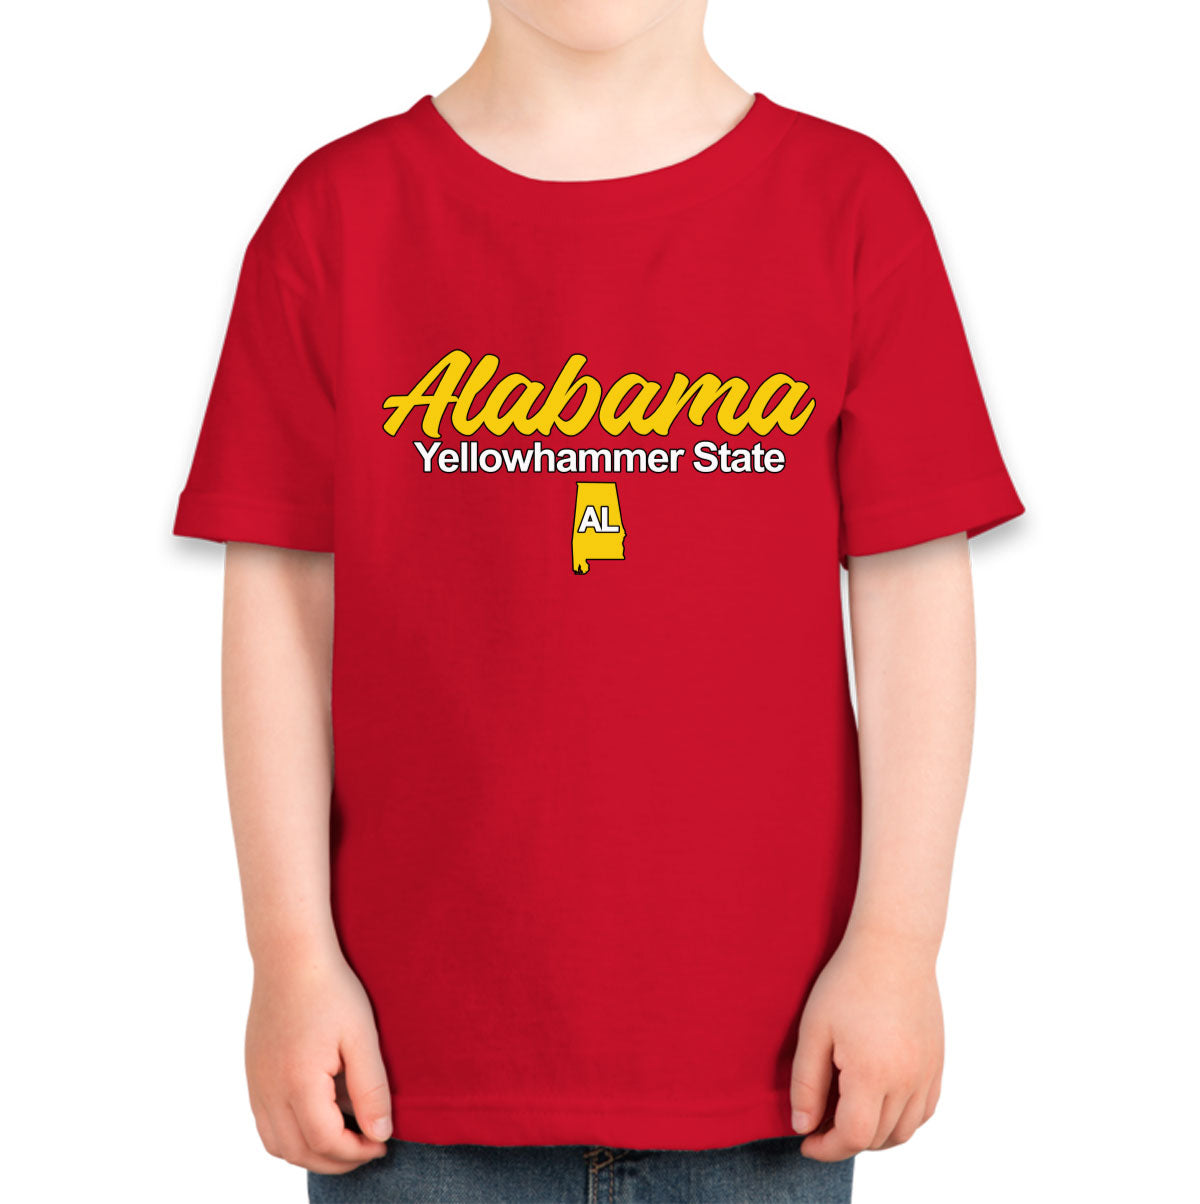 Alabama Yellowhammer State Toddler T-shirt